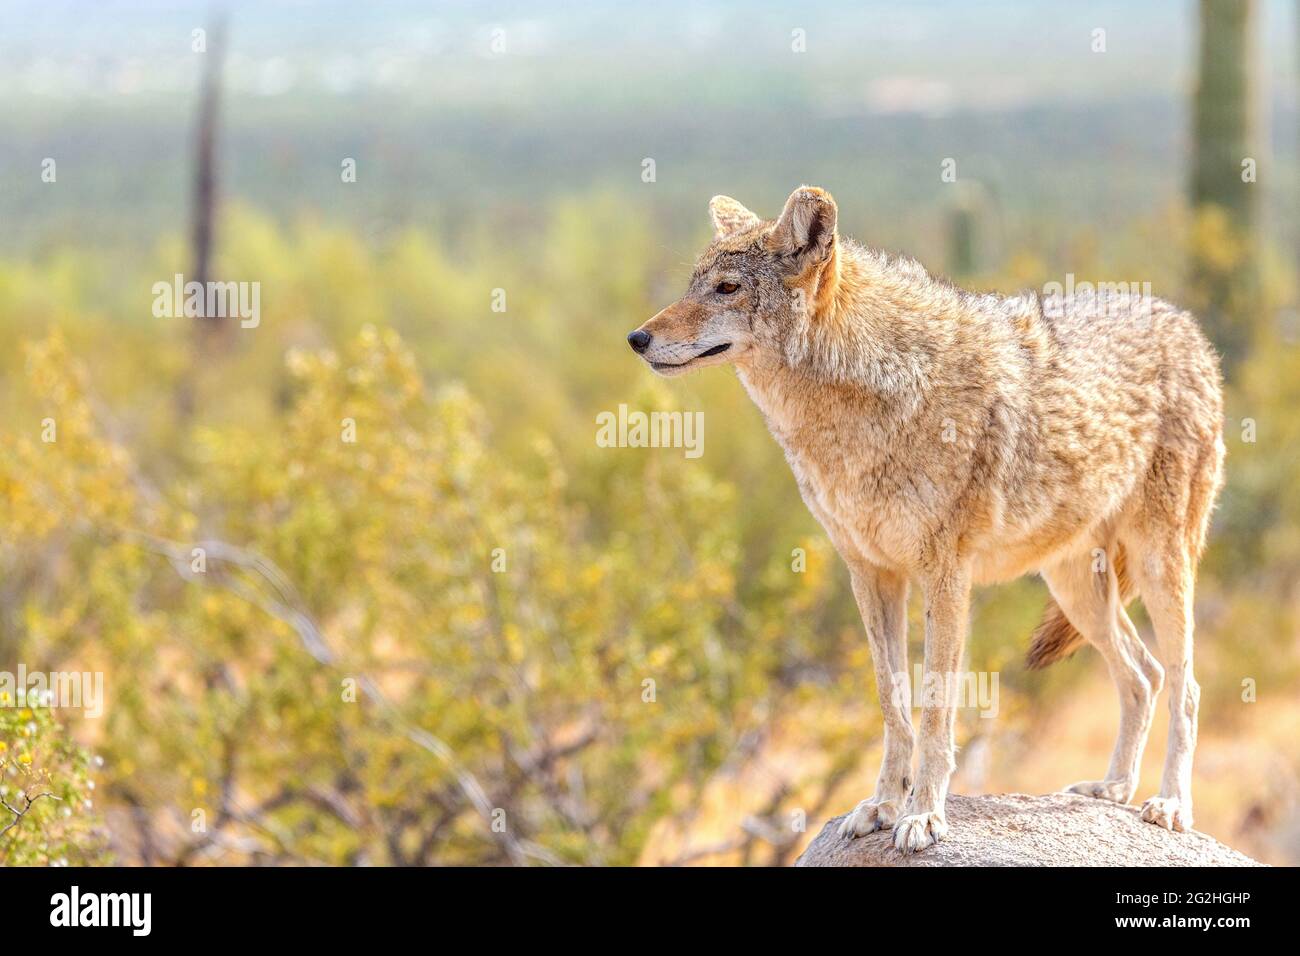 Desert Coyote arpentant son territoire debout sur un rocher dans le désert de Sonora sauvage. Coyote entouré de fleurs de Bush jaune bristle sous la lumière Banque D'Images